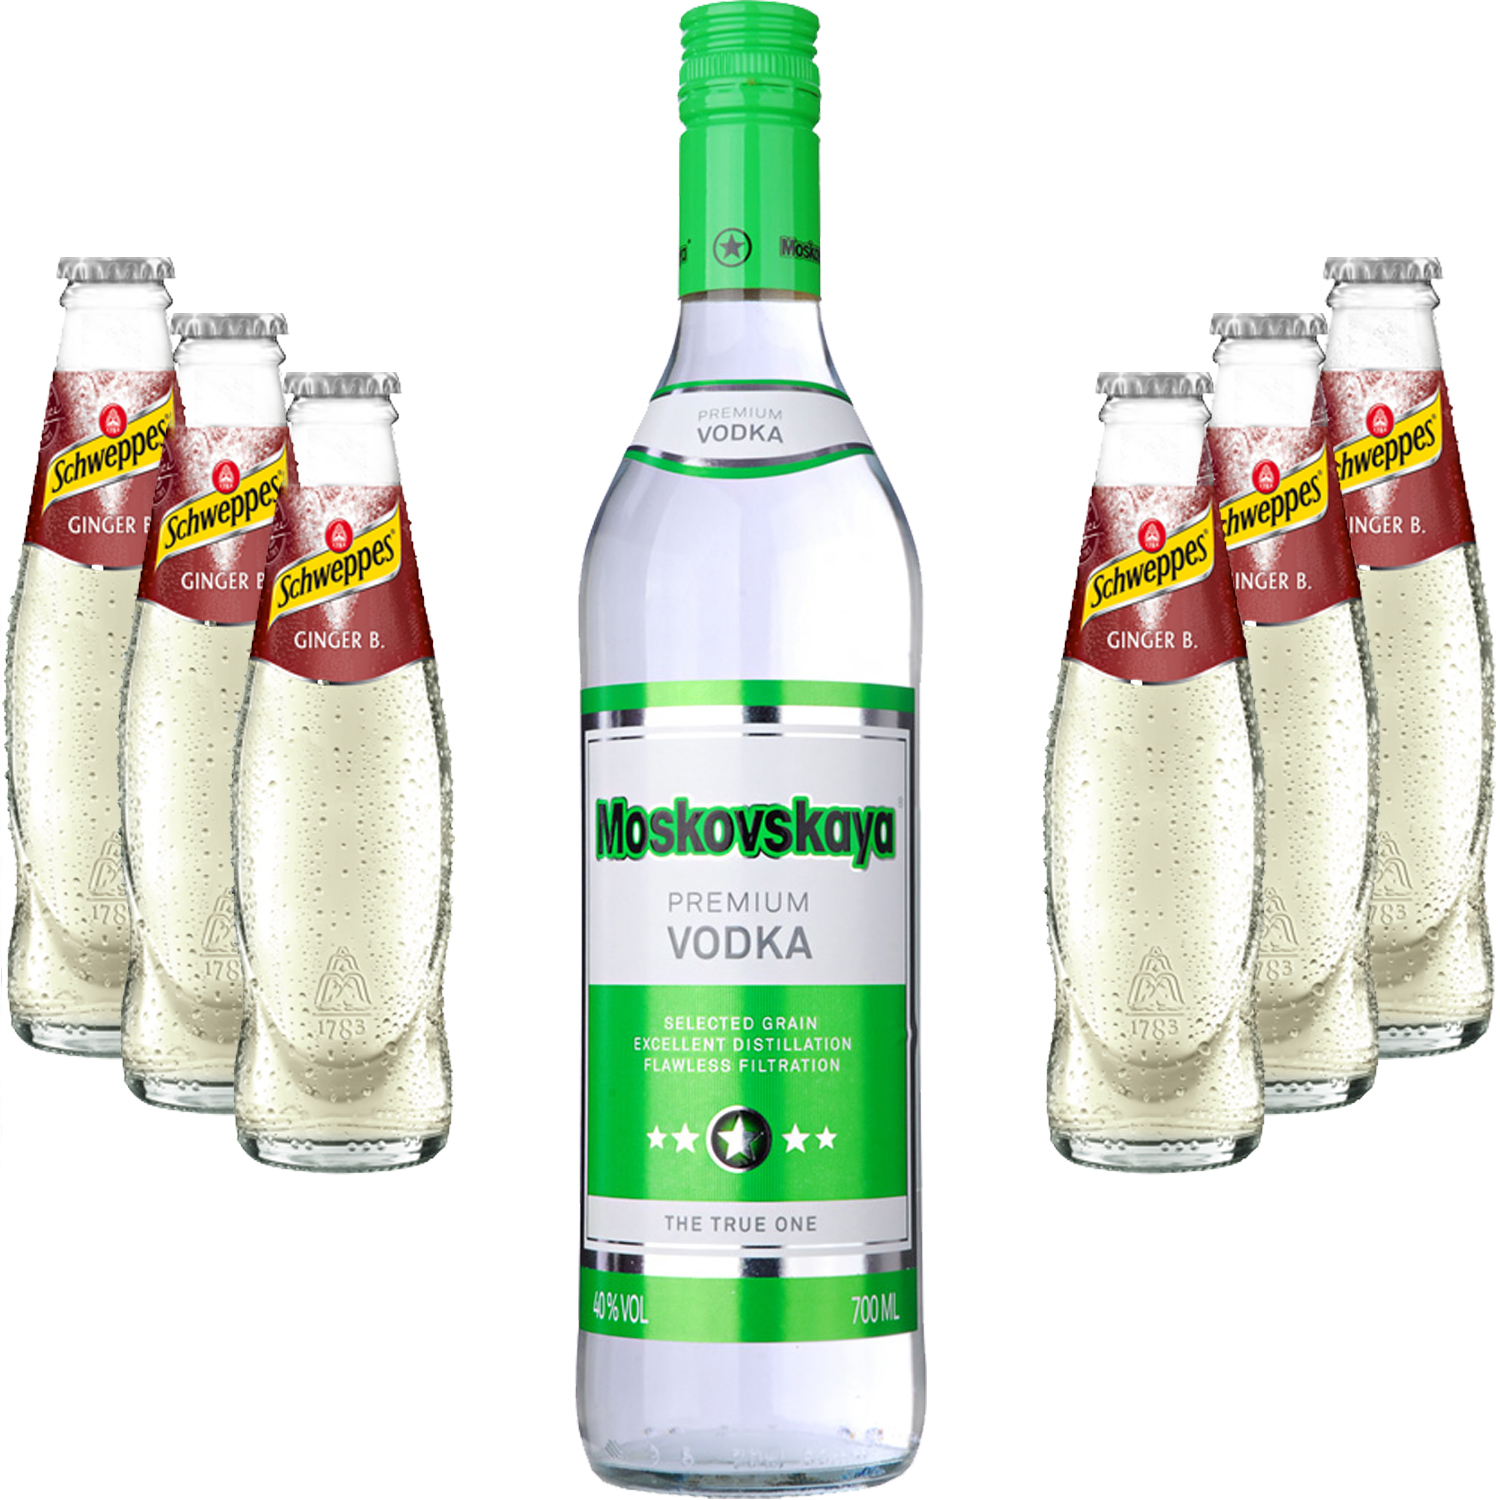 Moscow Mule Set - Moskovskaya Vodka 0,5l (38% Vol) + 6x Schweppes Ginger Beer 200ml - Inkl. Pfand MEHRWEG